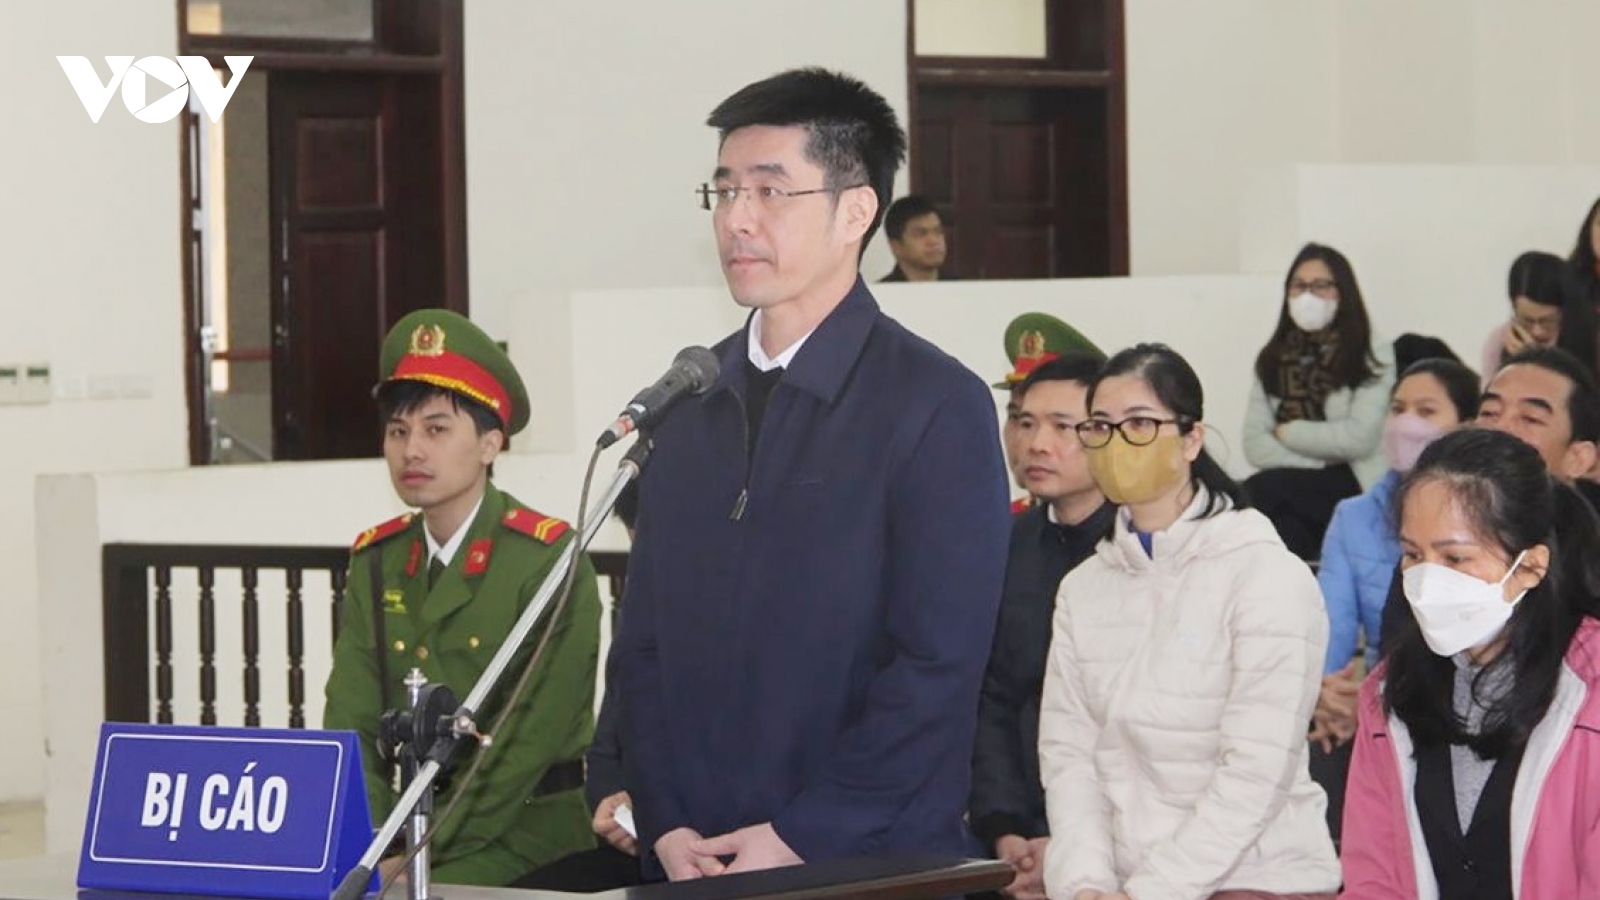 Bị cáo Hoàng Văn Hưng thừa nhận hành vi phạm tội như bản án sơ thẩm đã nêu